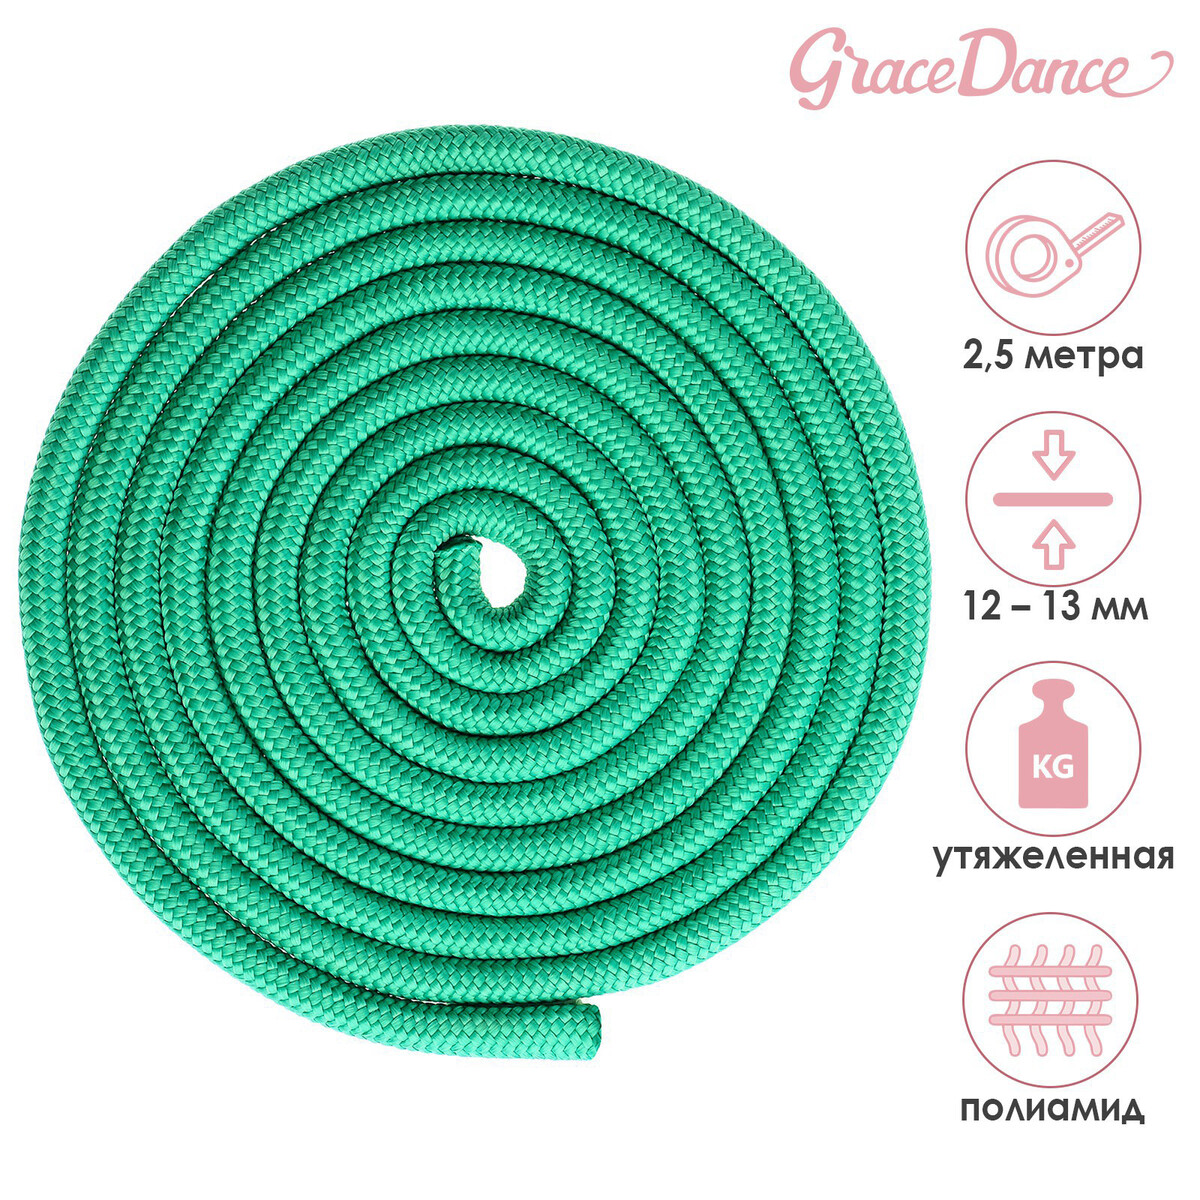 Скакалка для художественной гимнастики утяжеленная grace dance, 2,5 м, цвет зеленый скакалка для художественной гимнастики утяжеленная grace dance 3 м голубой